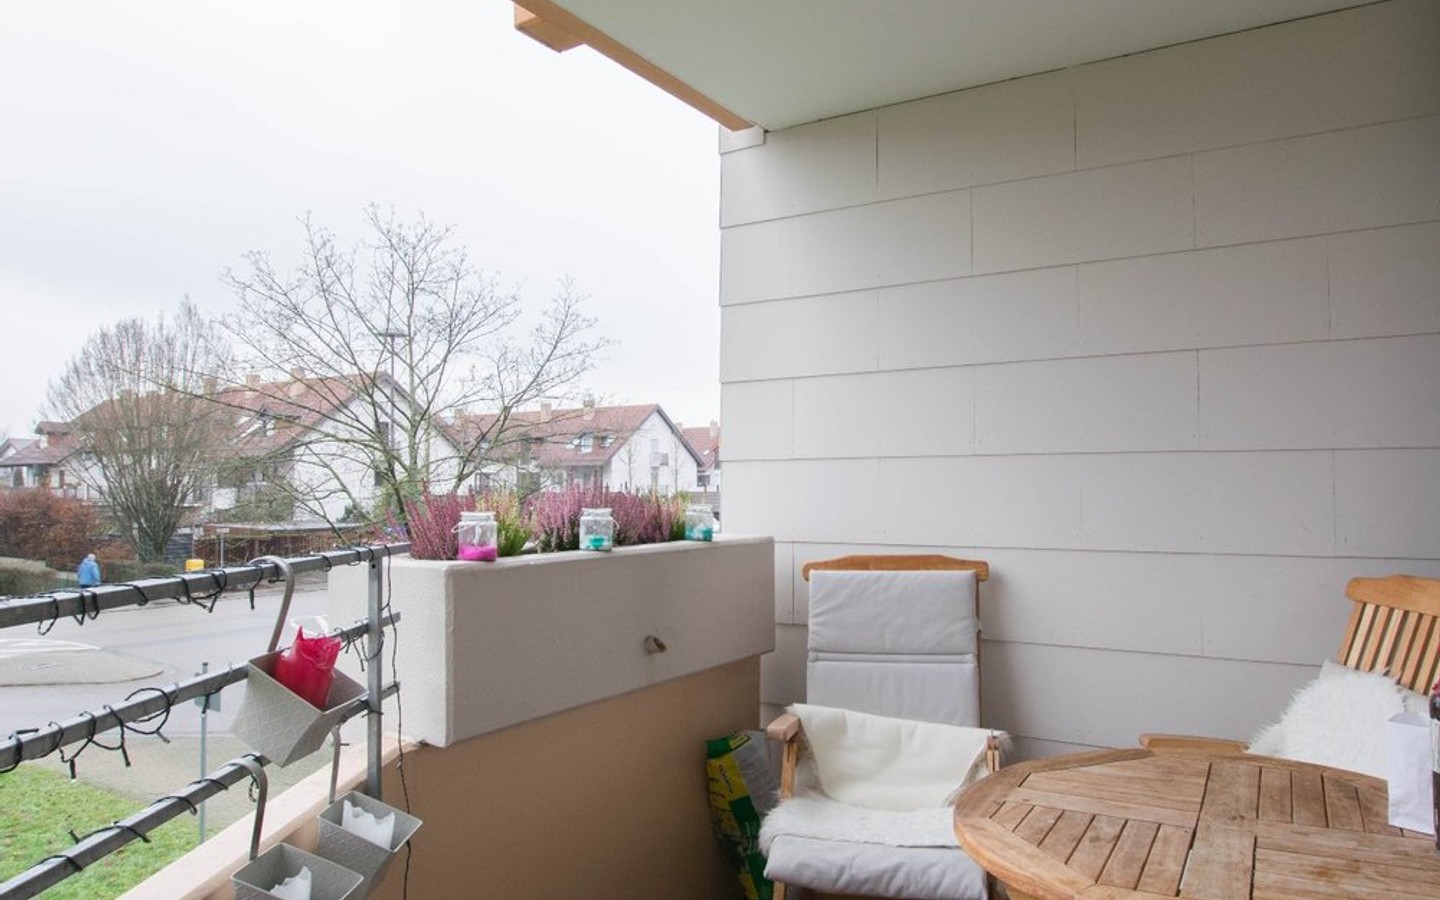 Balkon 1 - HD-Handschuhsheim: Tolle Wohnung mit 2 Balkonen und TG-Stellplatz!